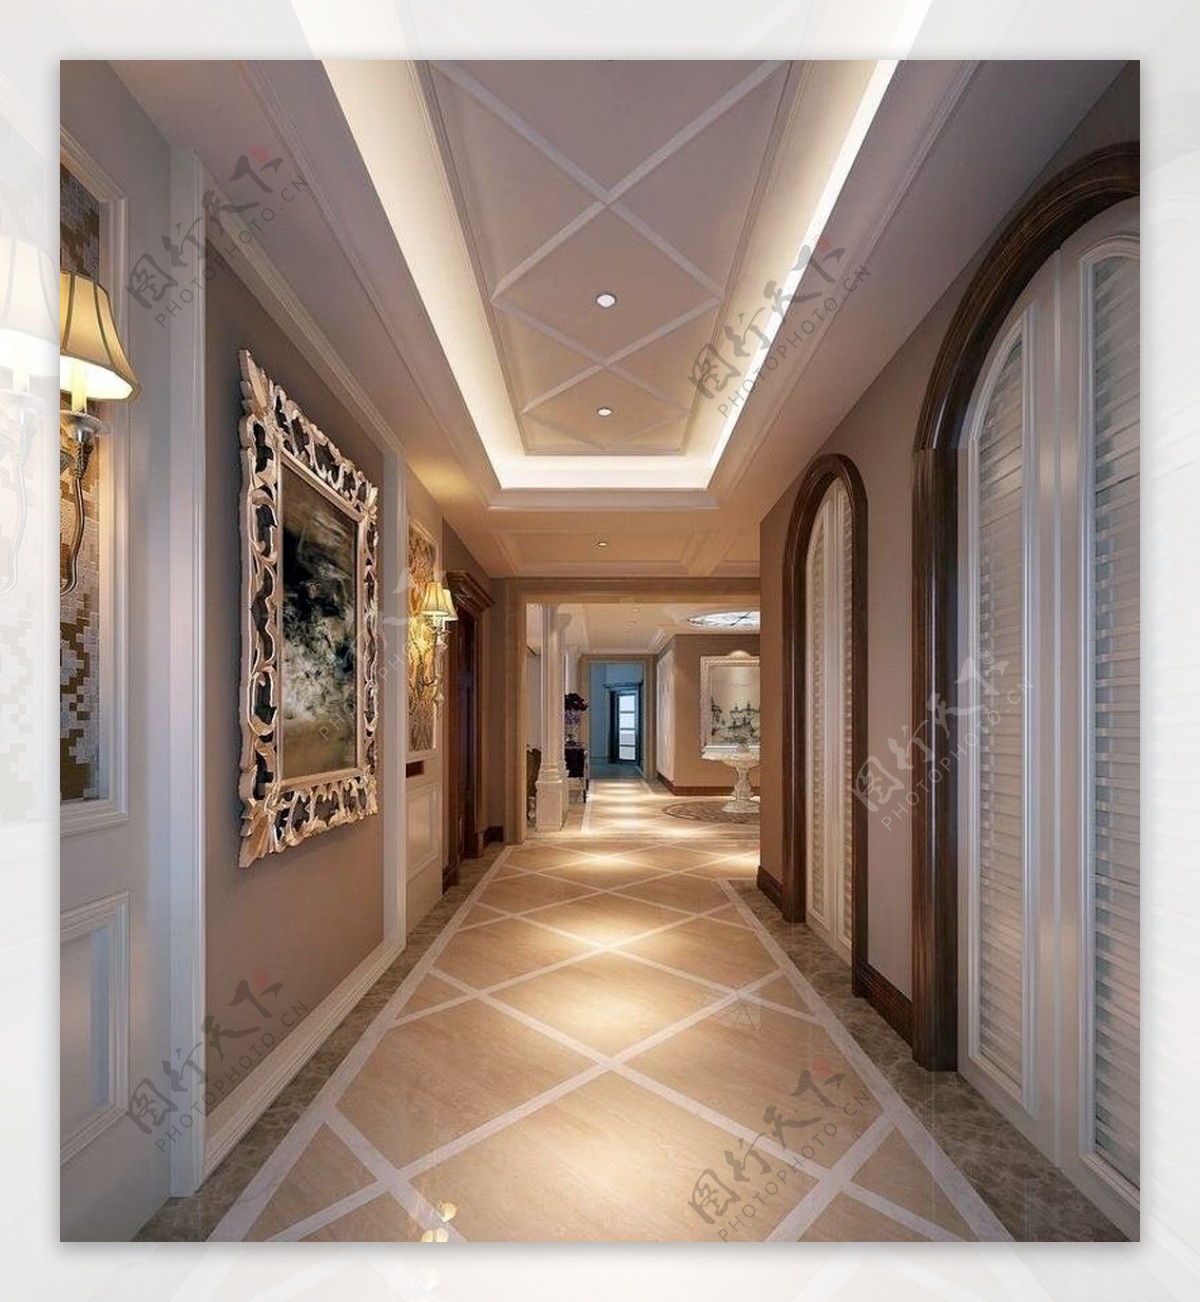 优雅风格室内设计走廊效果图JPG文件